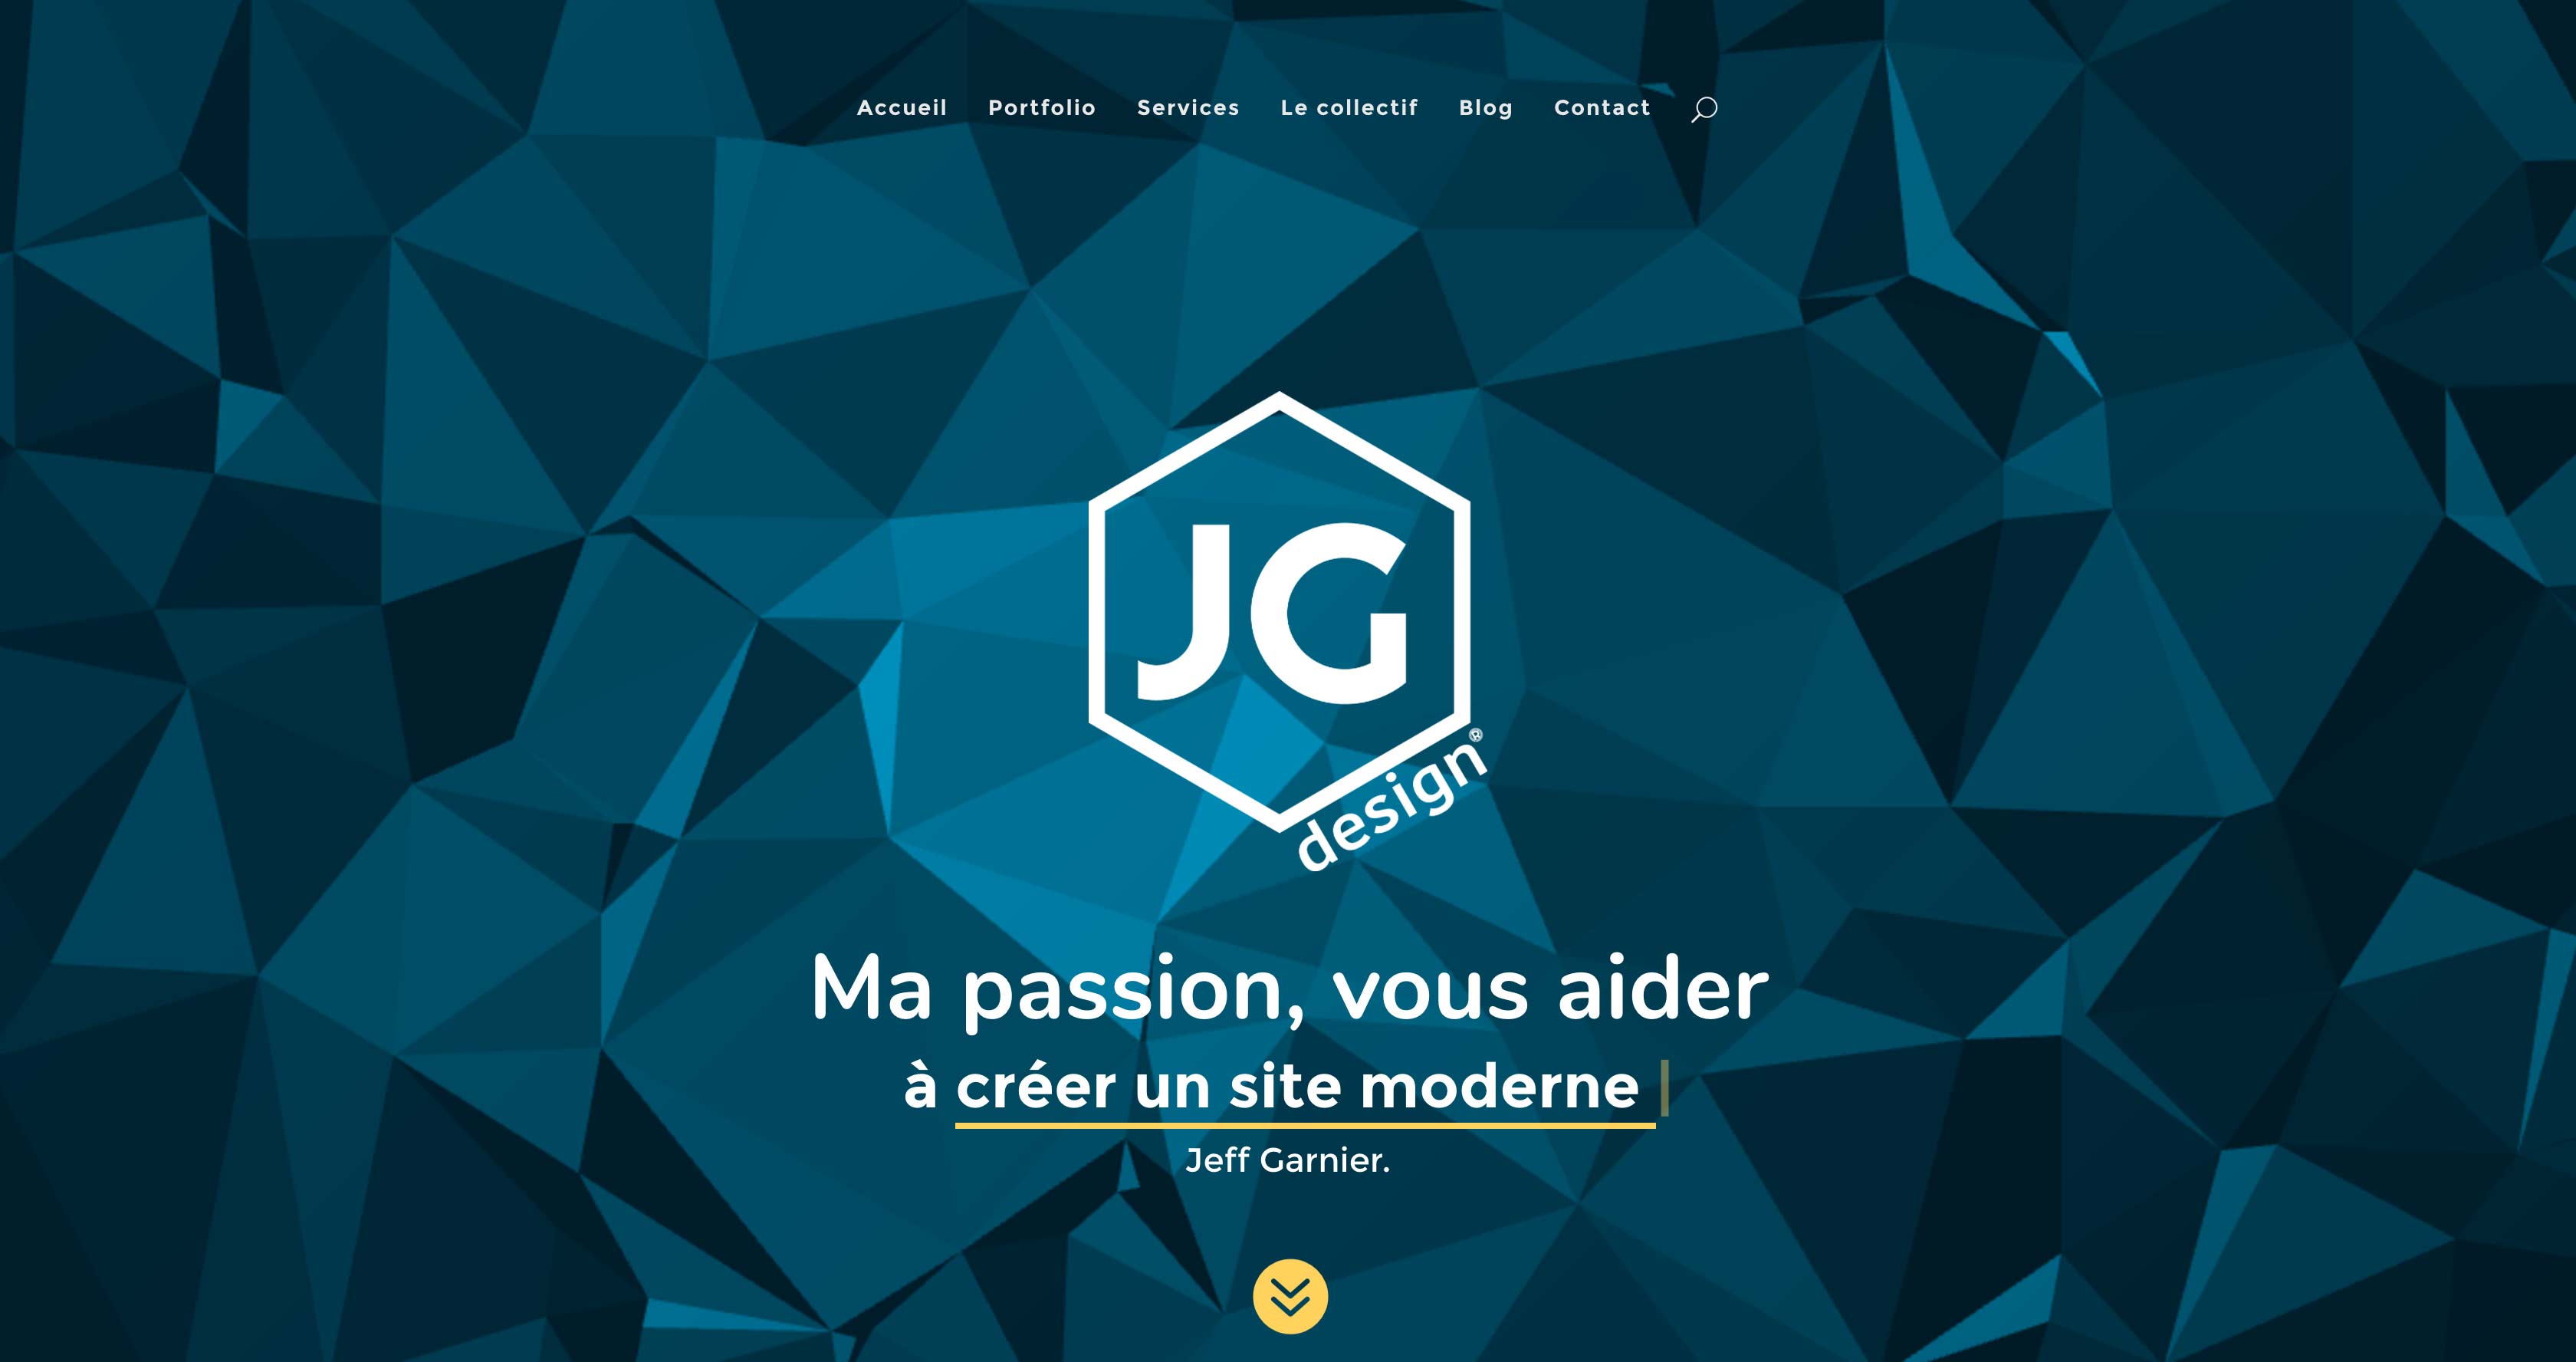 (c) Jg-design.fr